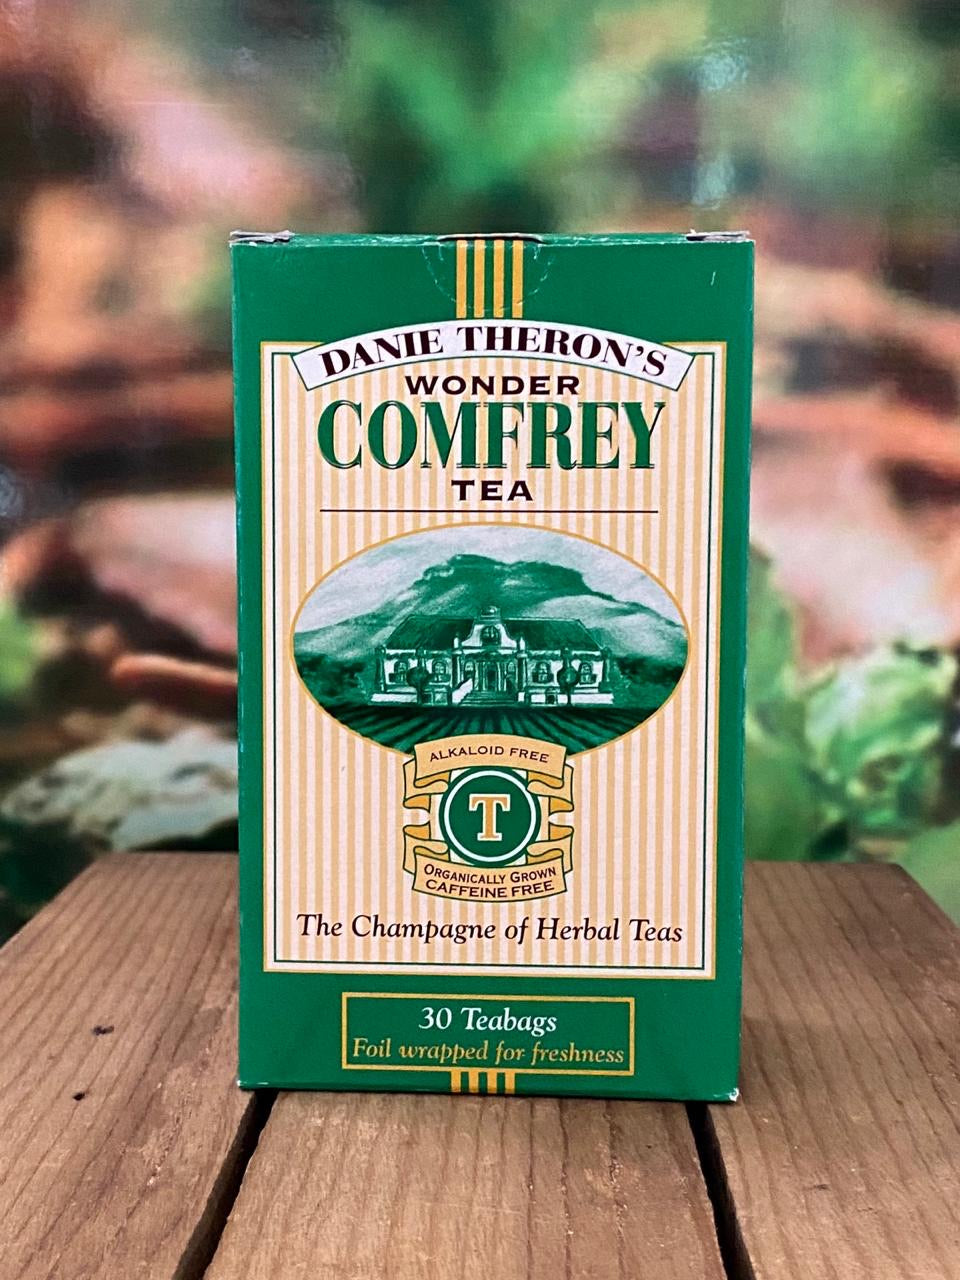 Theron's Comfrey Tea 30 bags